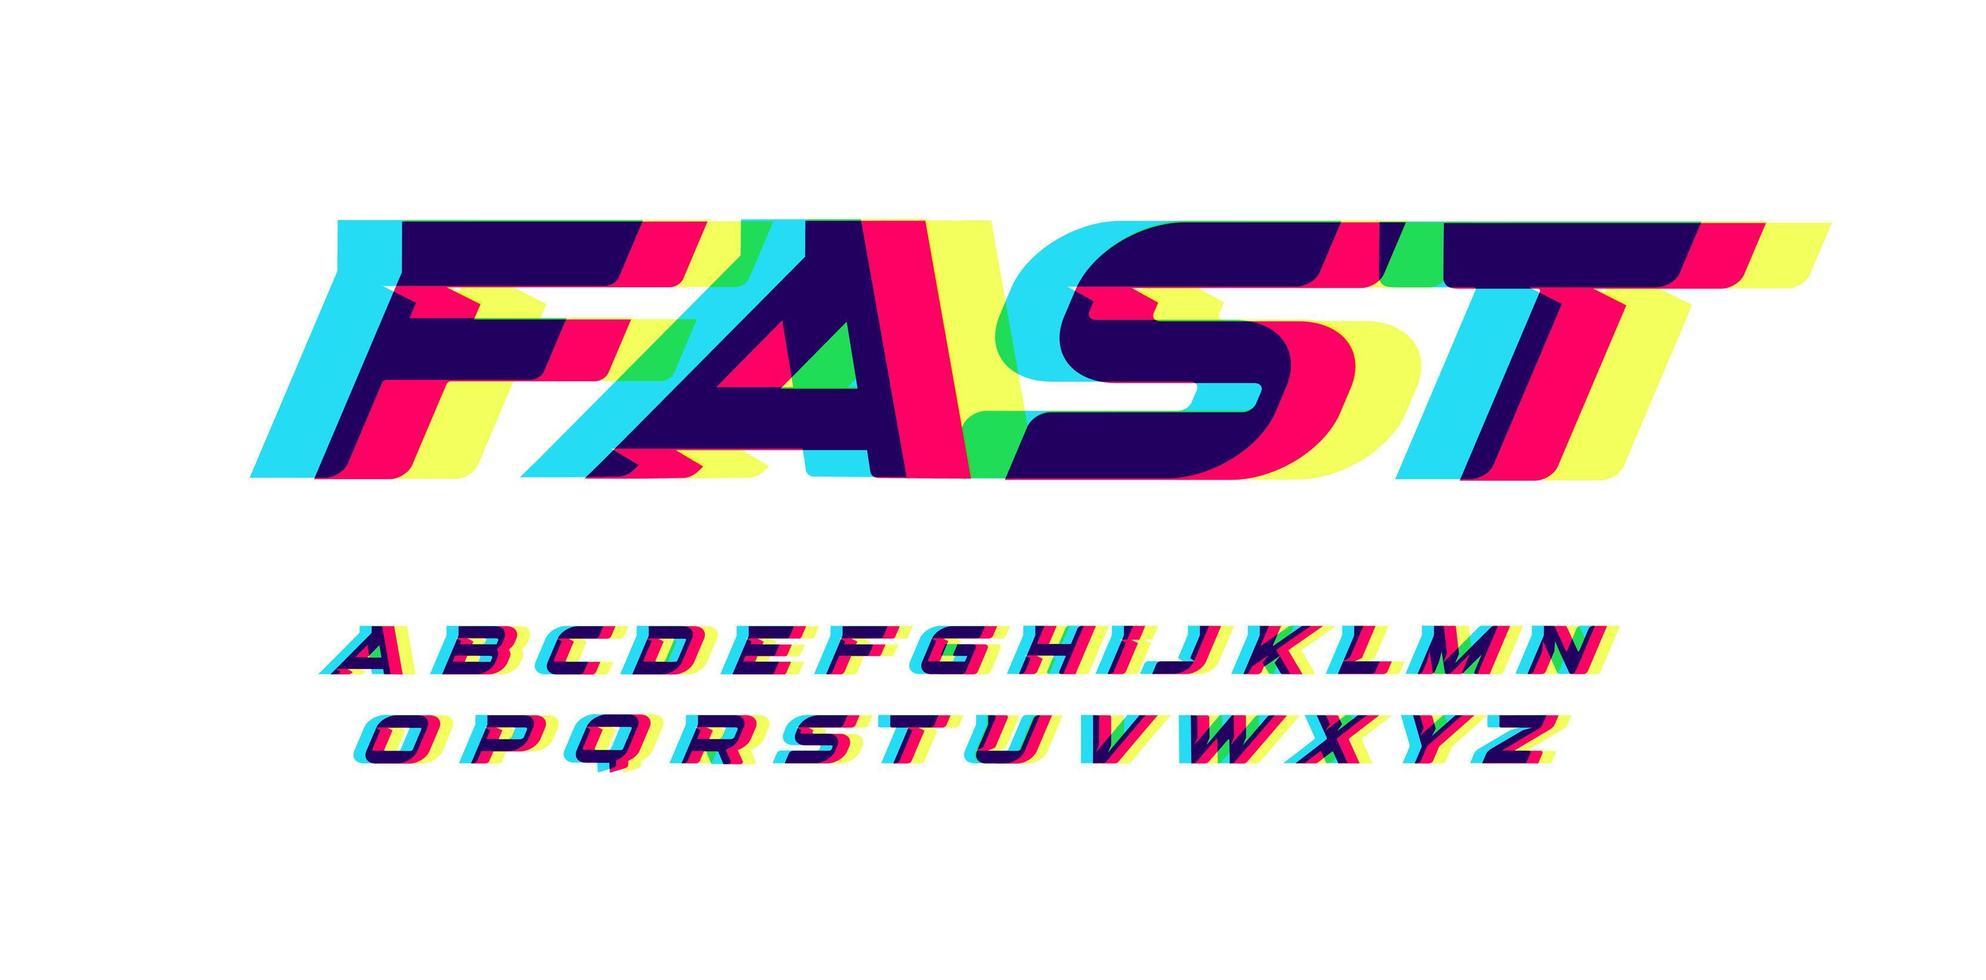 övertryck bokstäver och siffror. glödande röd blå gul spektrum effekt stil vektor latinska alfabetet. teckensnitt för cybersport, racing, bil, logotyp och affischdesign. typografi design.